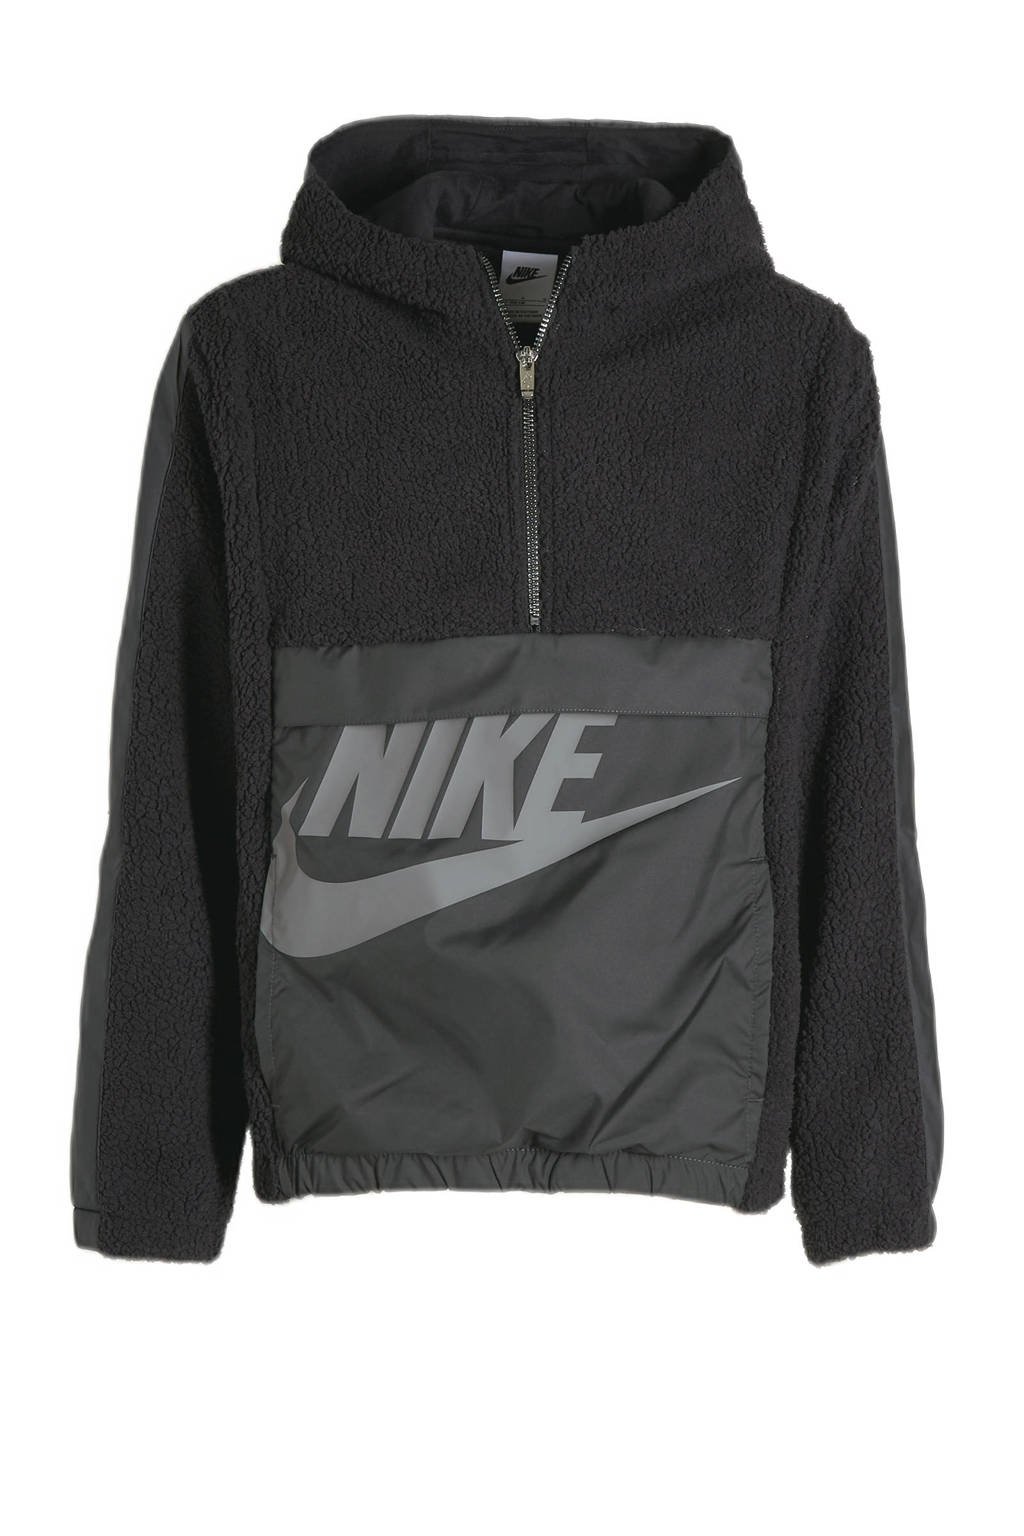 Nike fleece hoodie zwart/grijs, Zwart/grijs